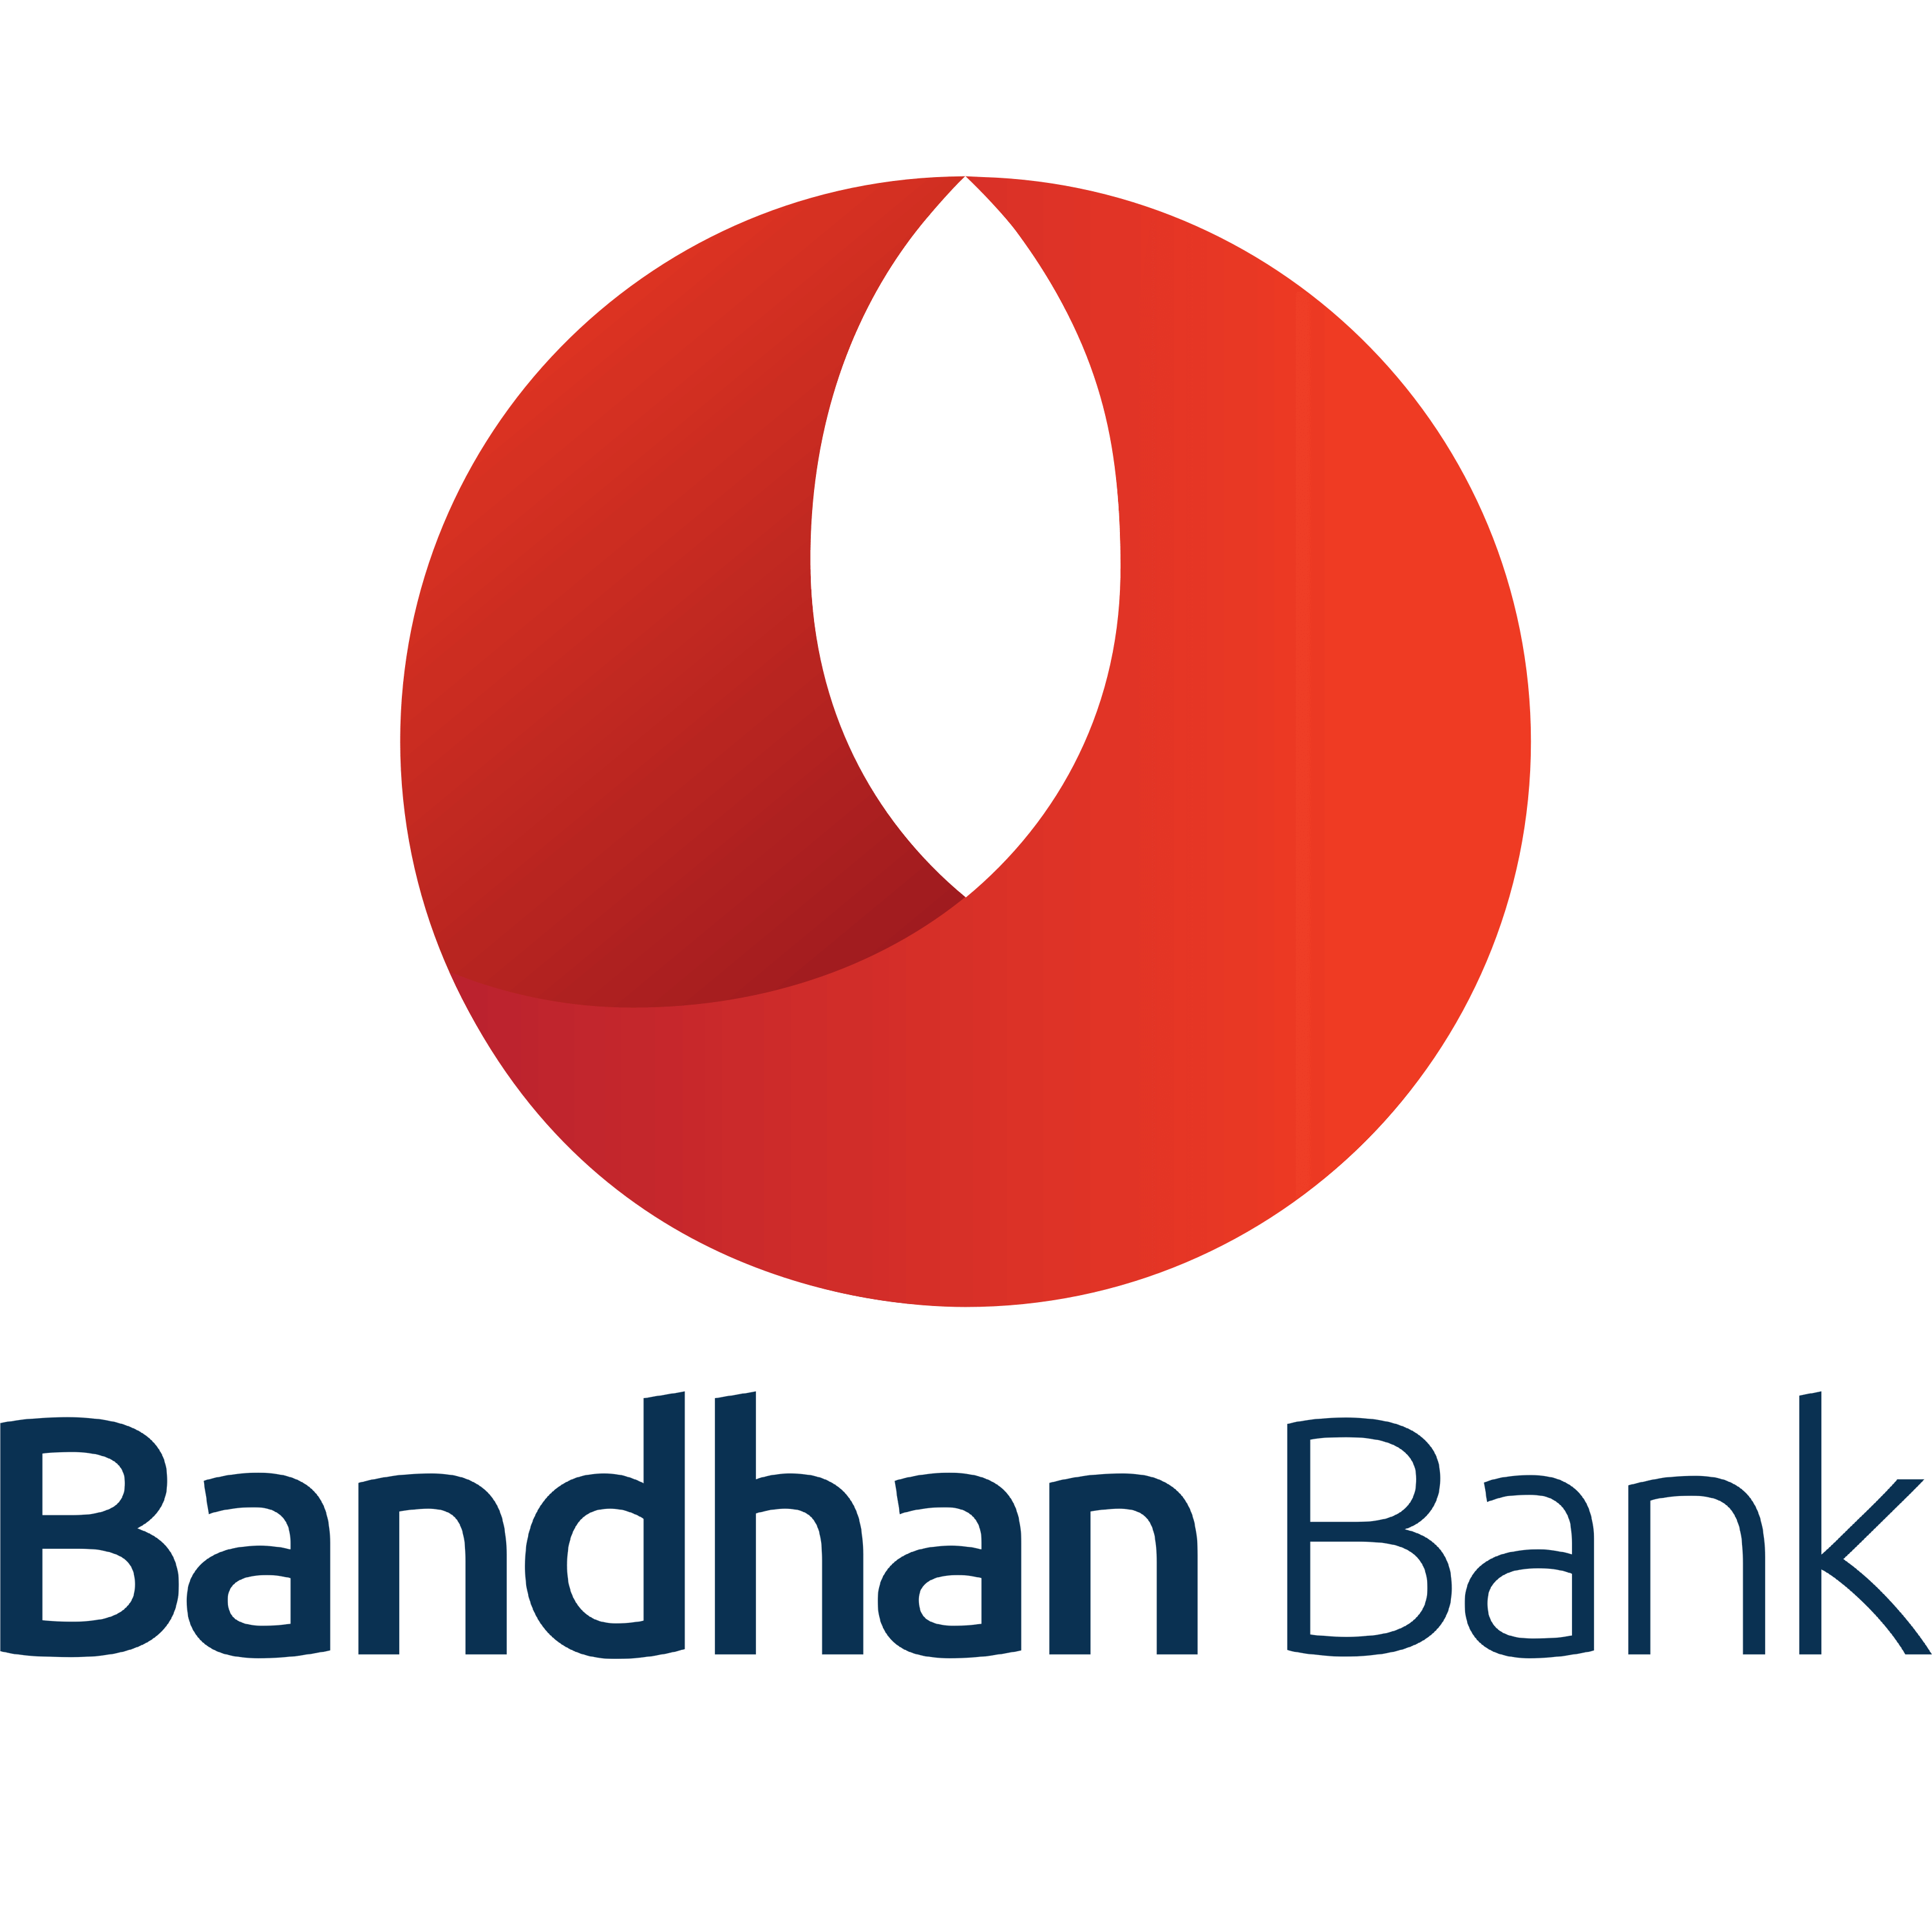 Bandhan Bank Logo Transparent Photo